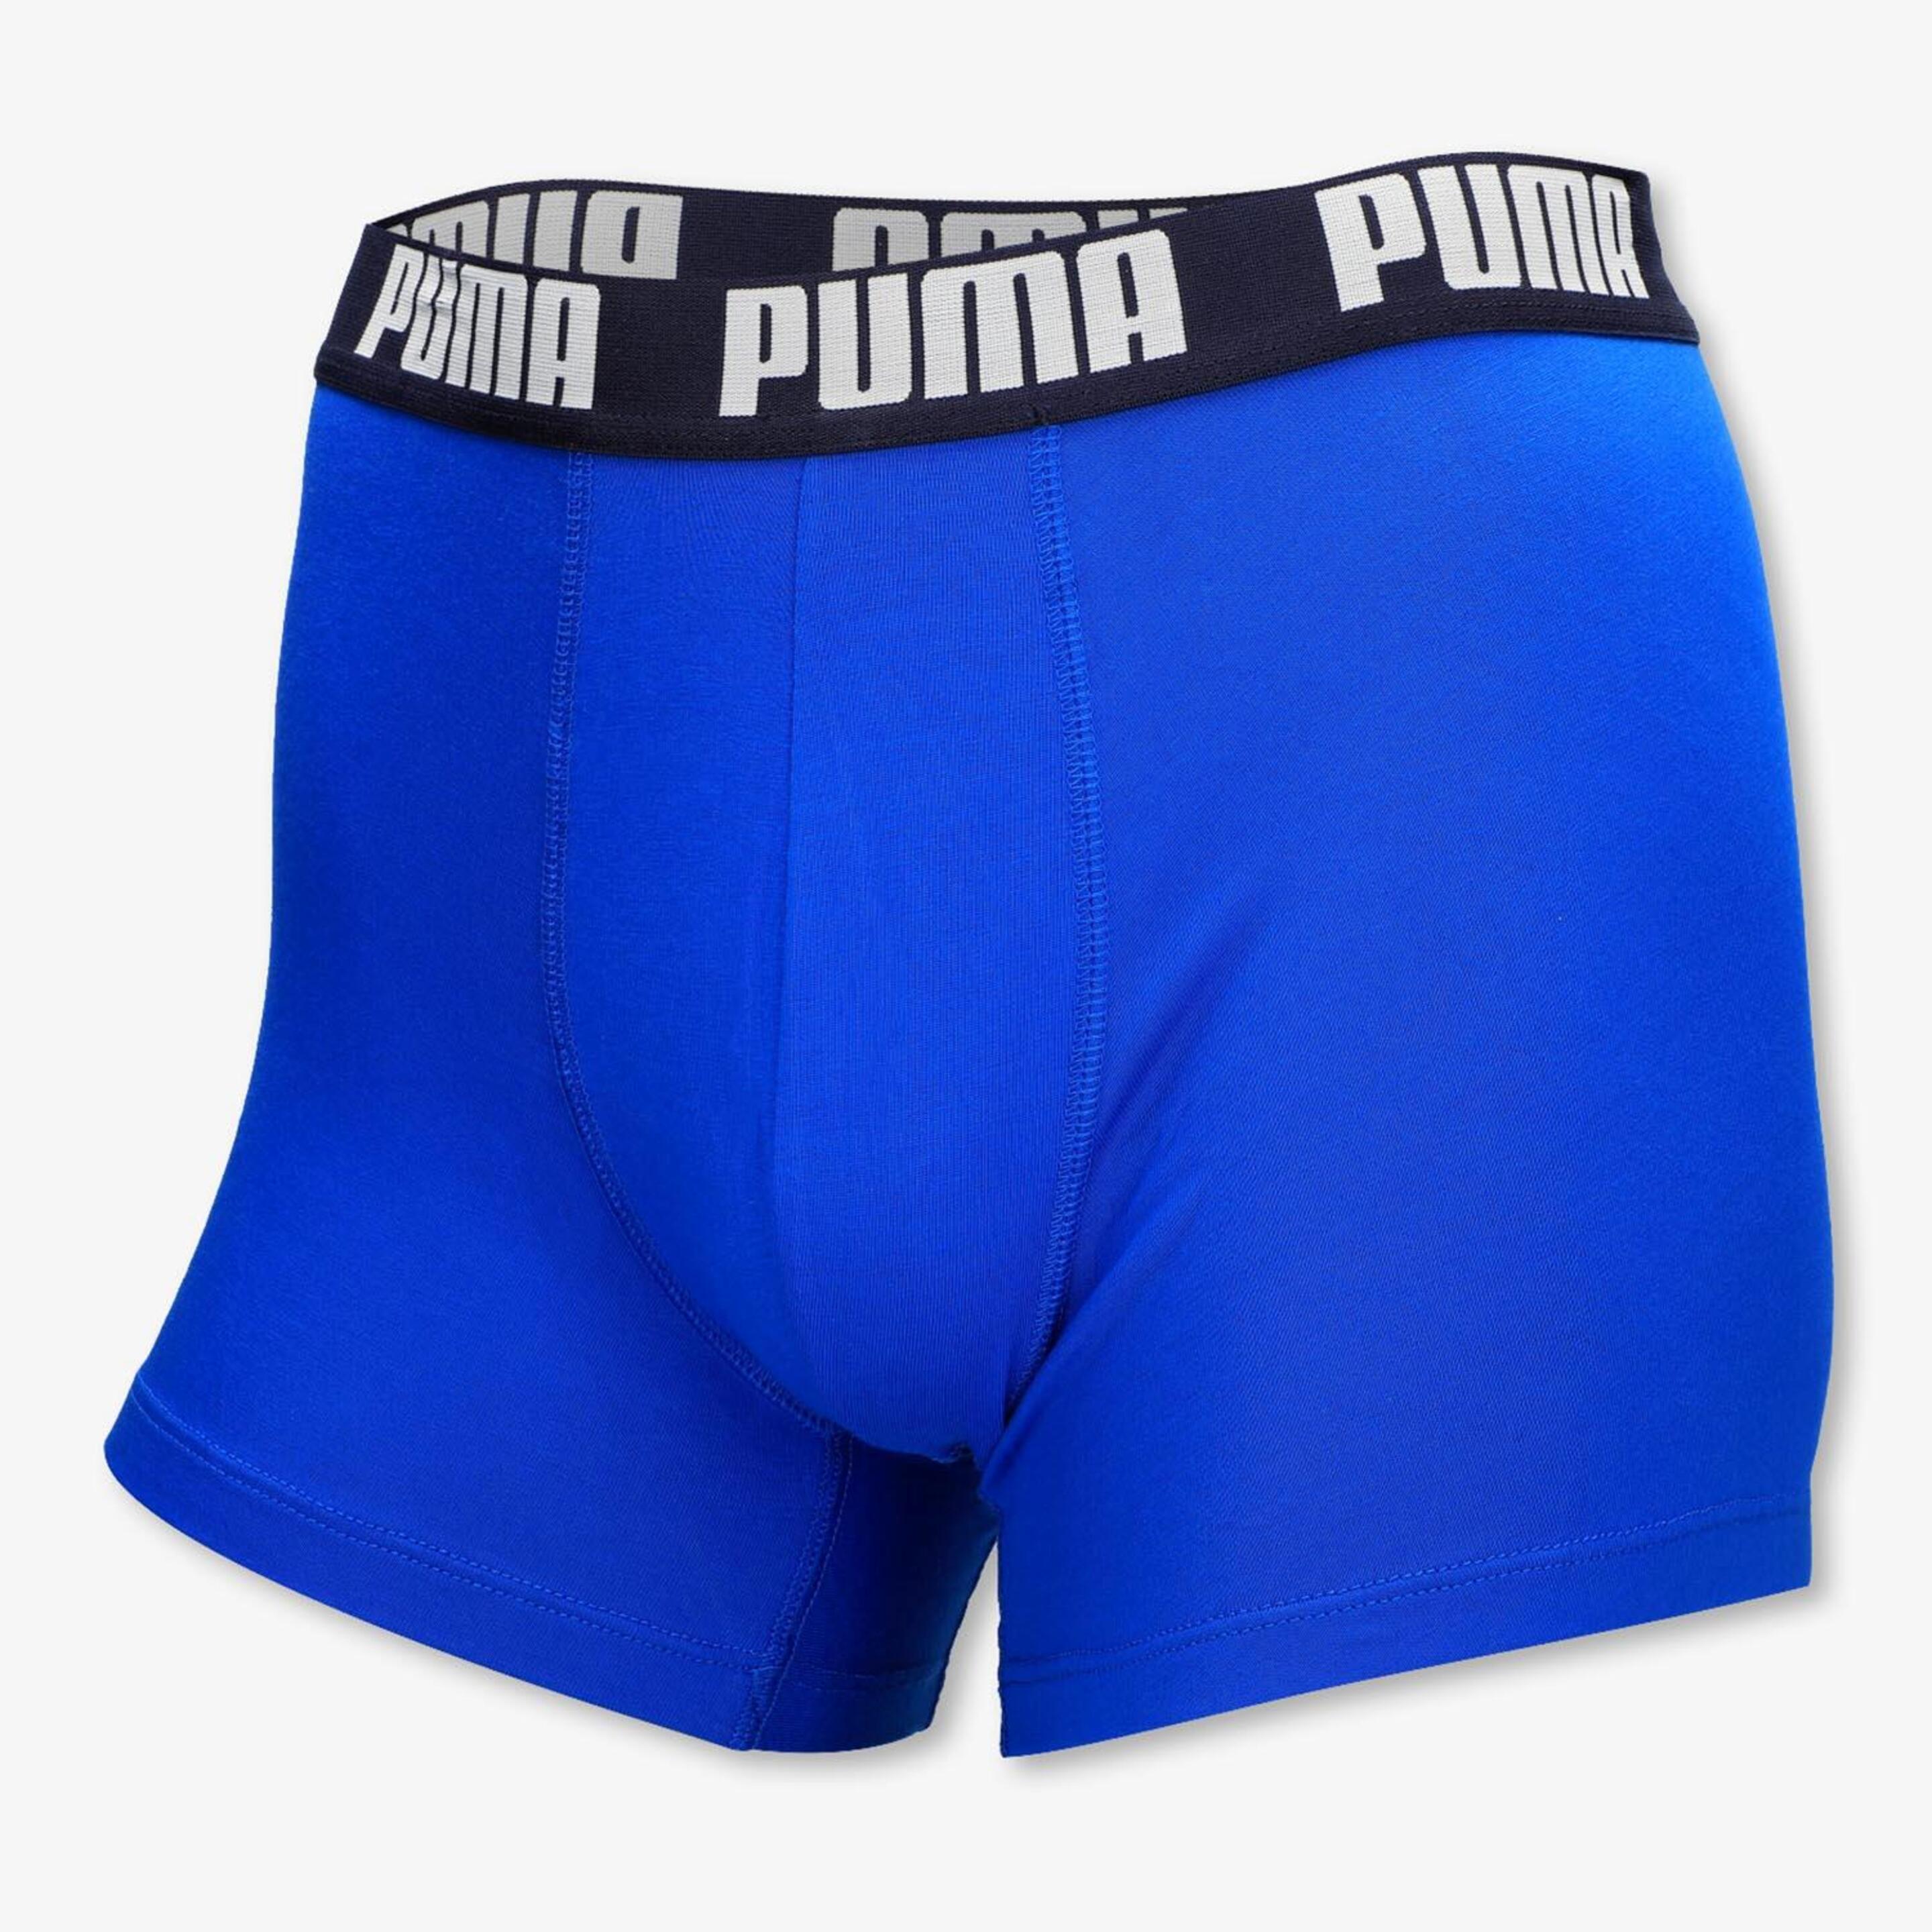 Puma Basic - Azul - Calzoncillos Bóxer Hombre